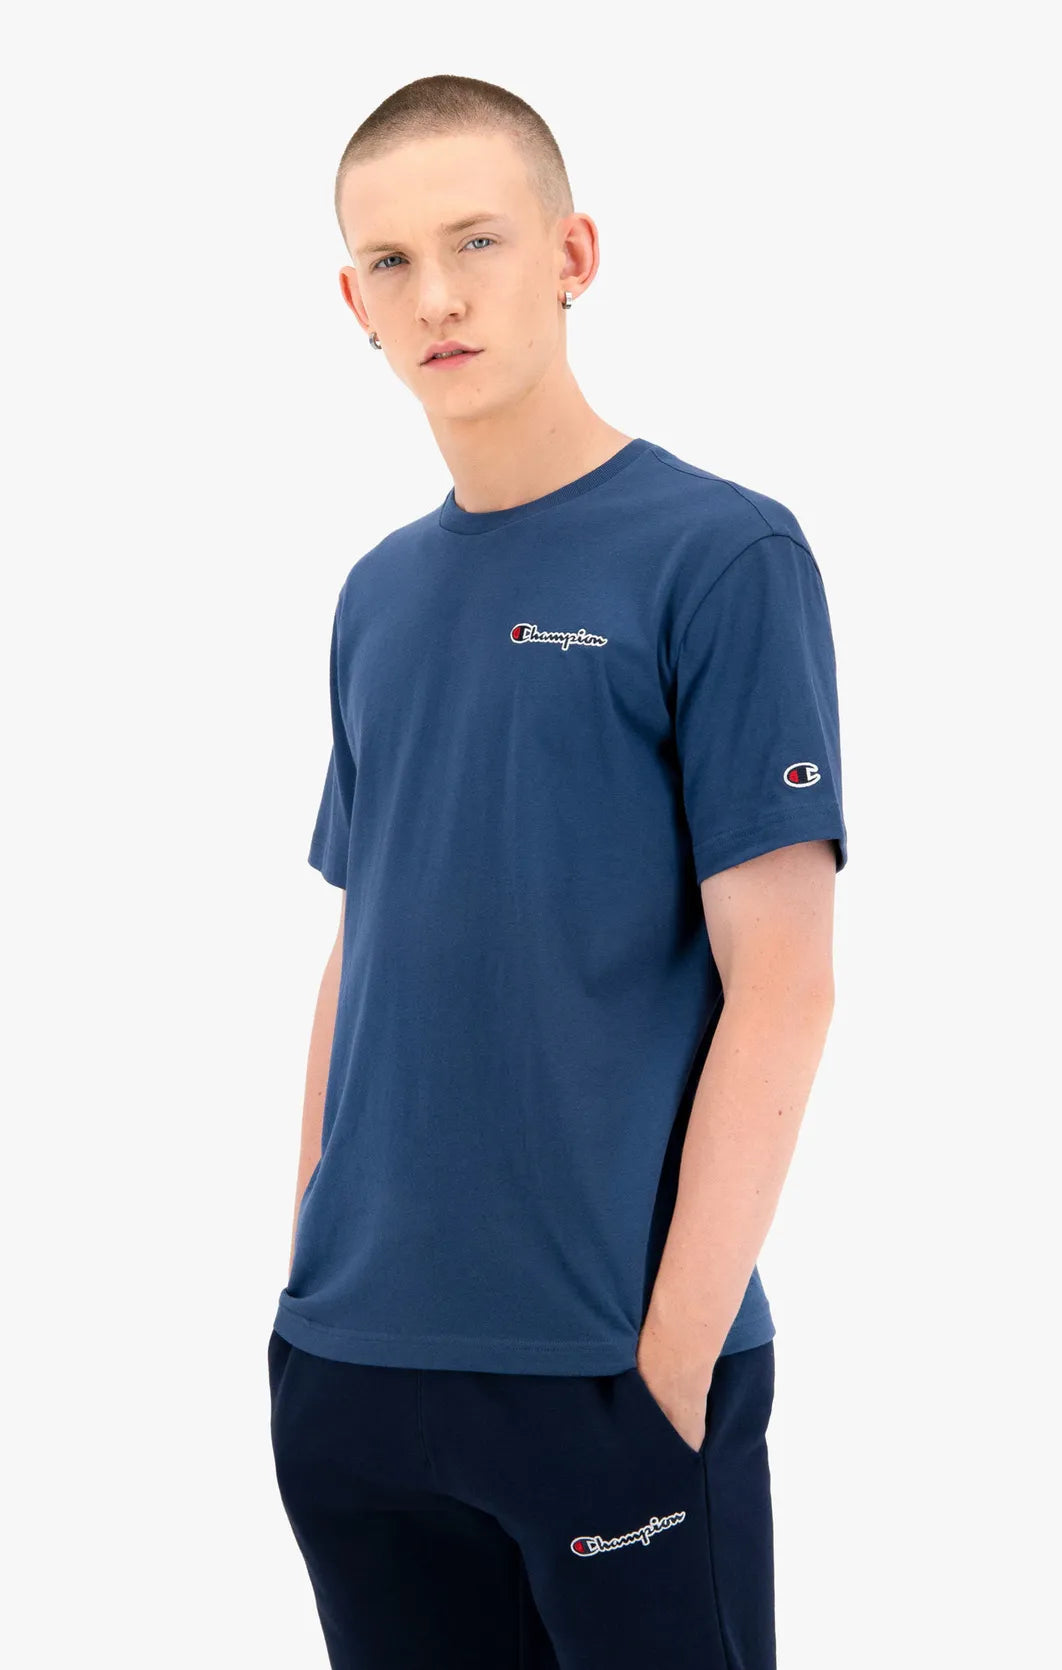 Champion Schriftzug mit – uscar-world Dark 216480 Turquoise T-Shirt Logo kleinem